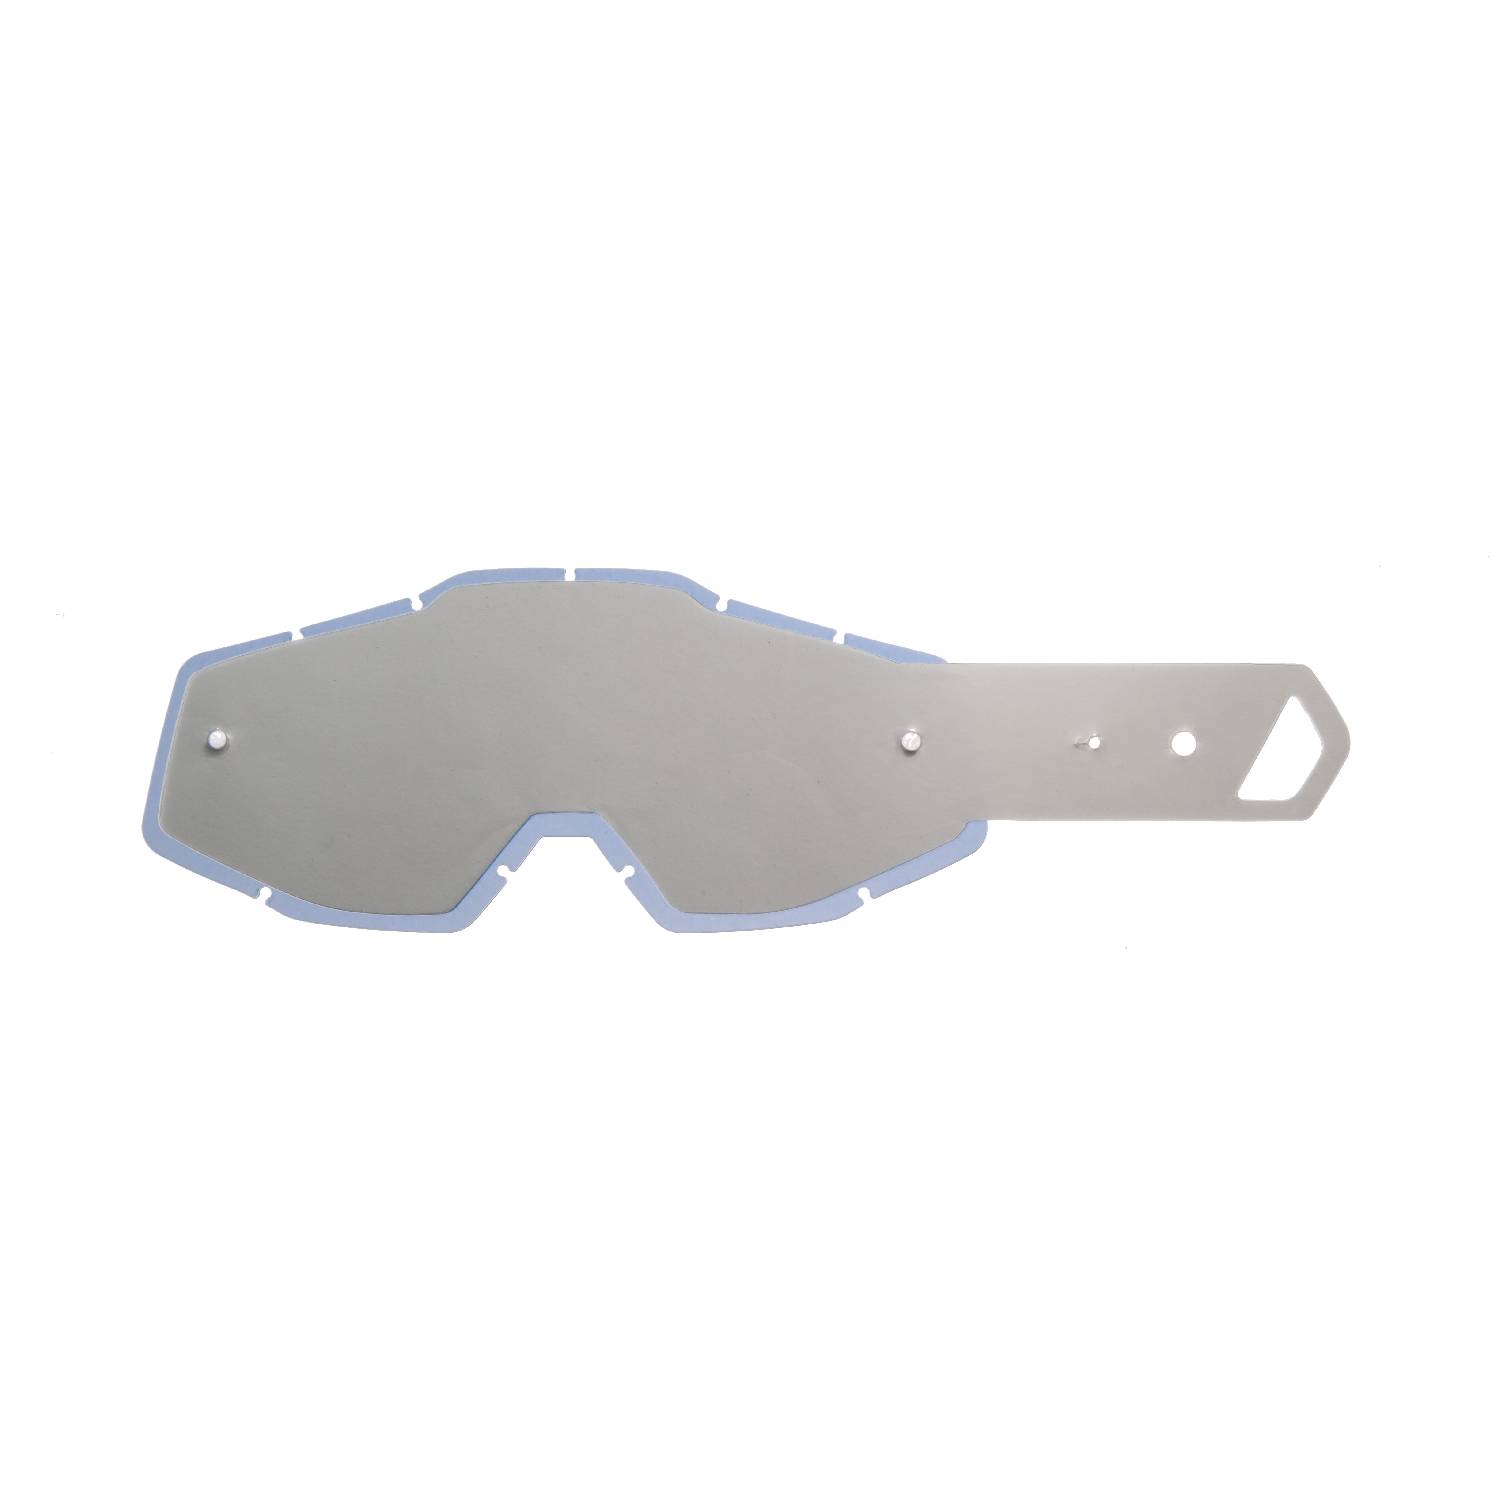 Lente fumè + 10 Strappi (Combo) compatibile per occhiale/maschera 100% Racecraft / Strata / Accuri / Mercury